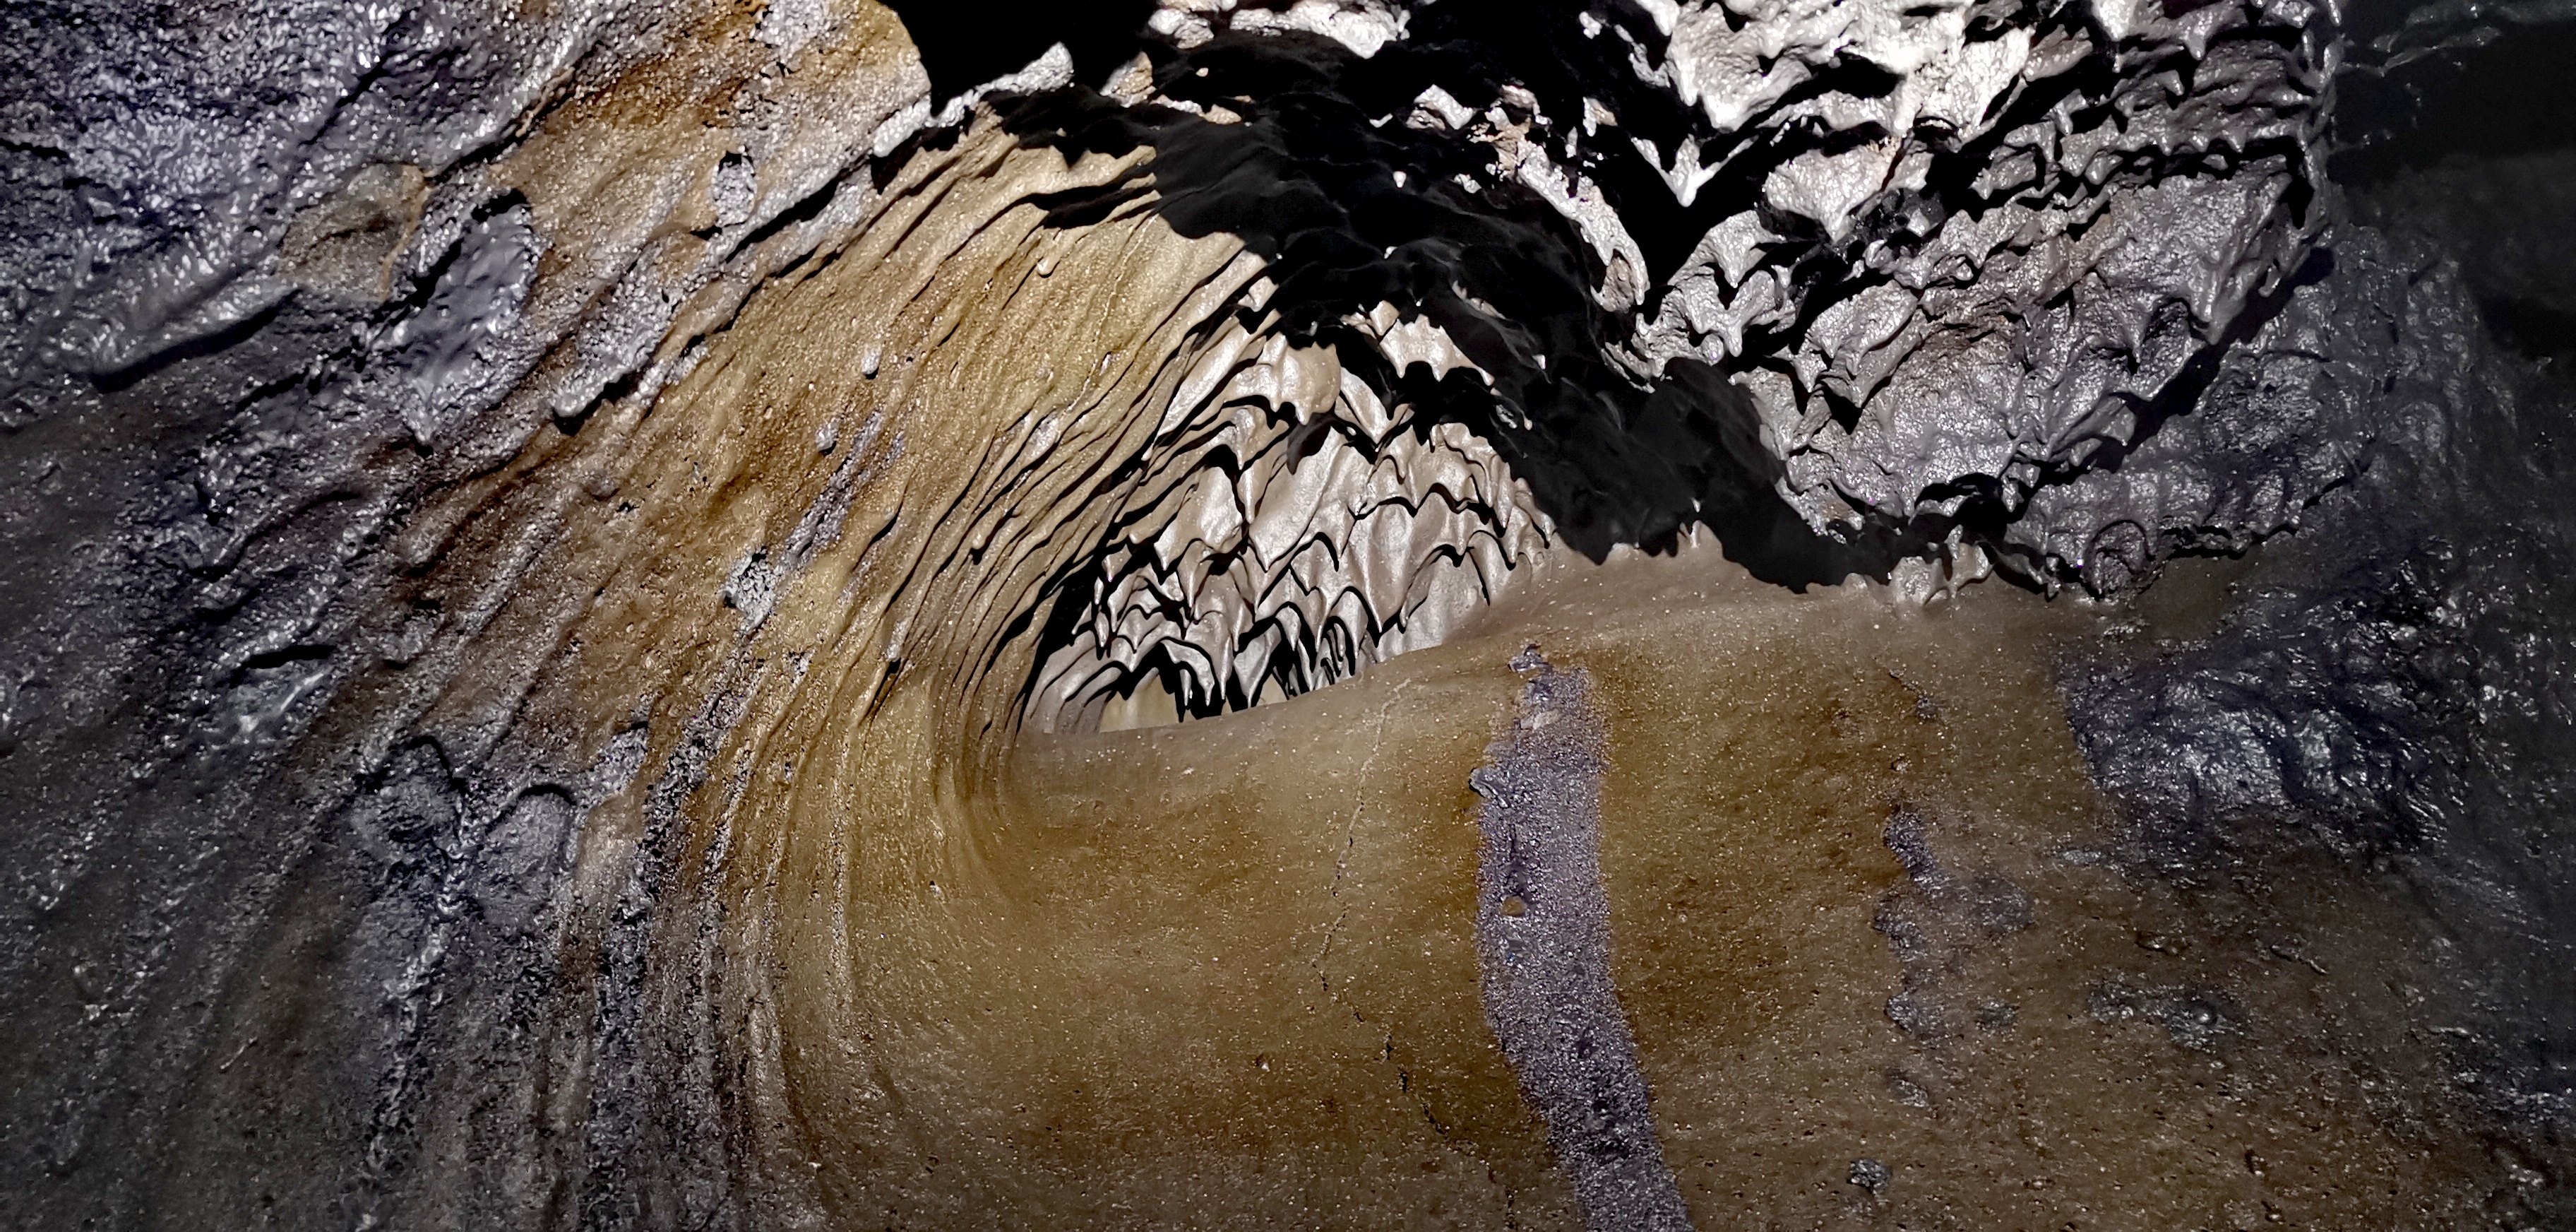 Vague de lave | Tunnel de lave Kala